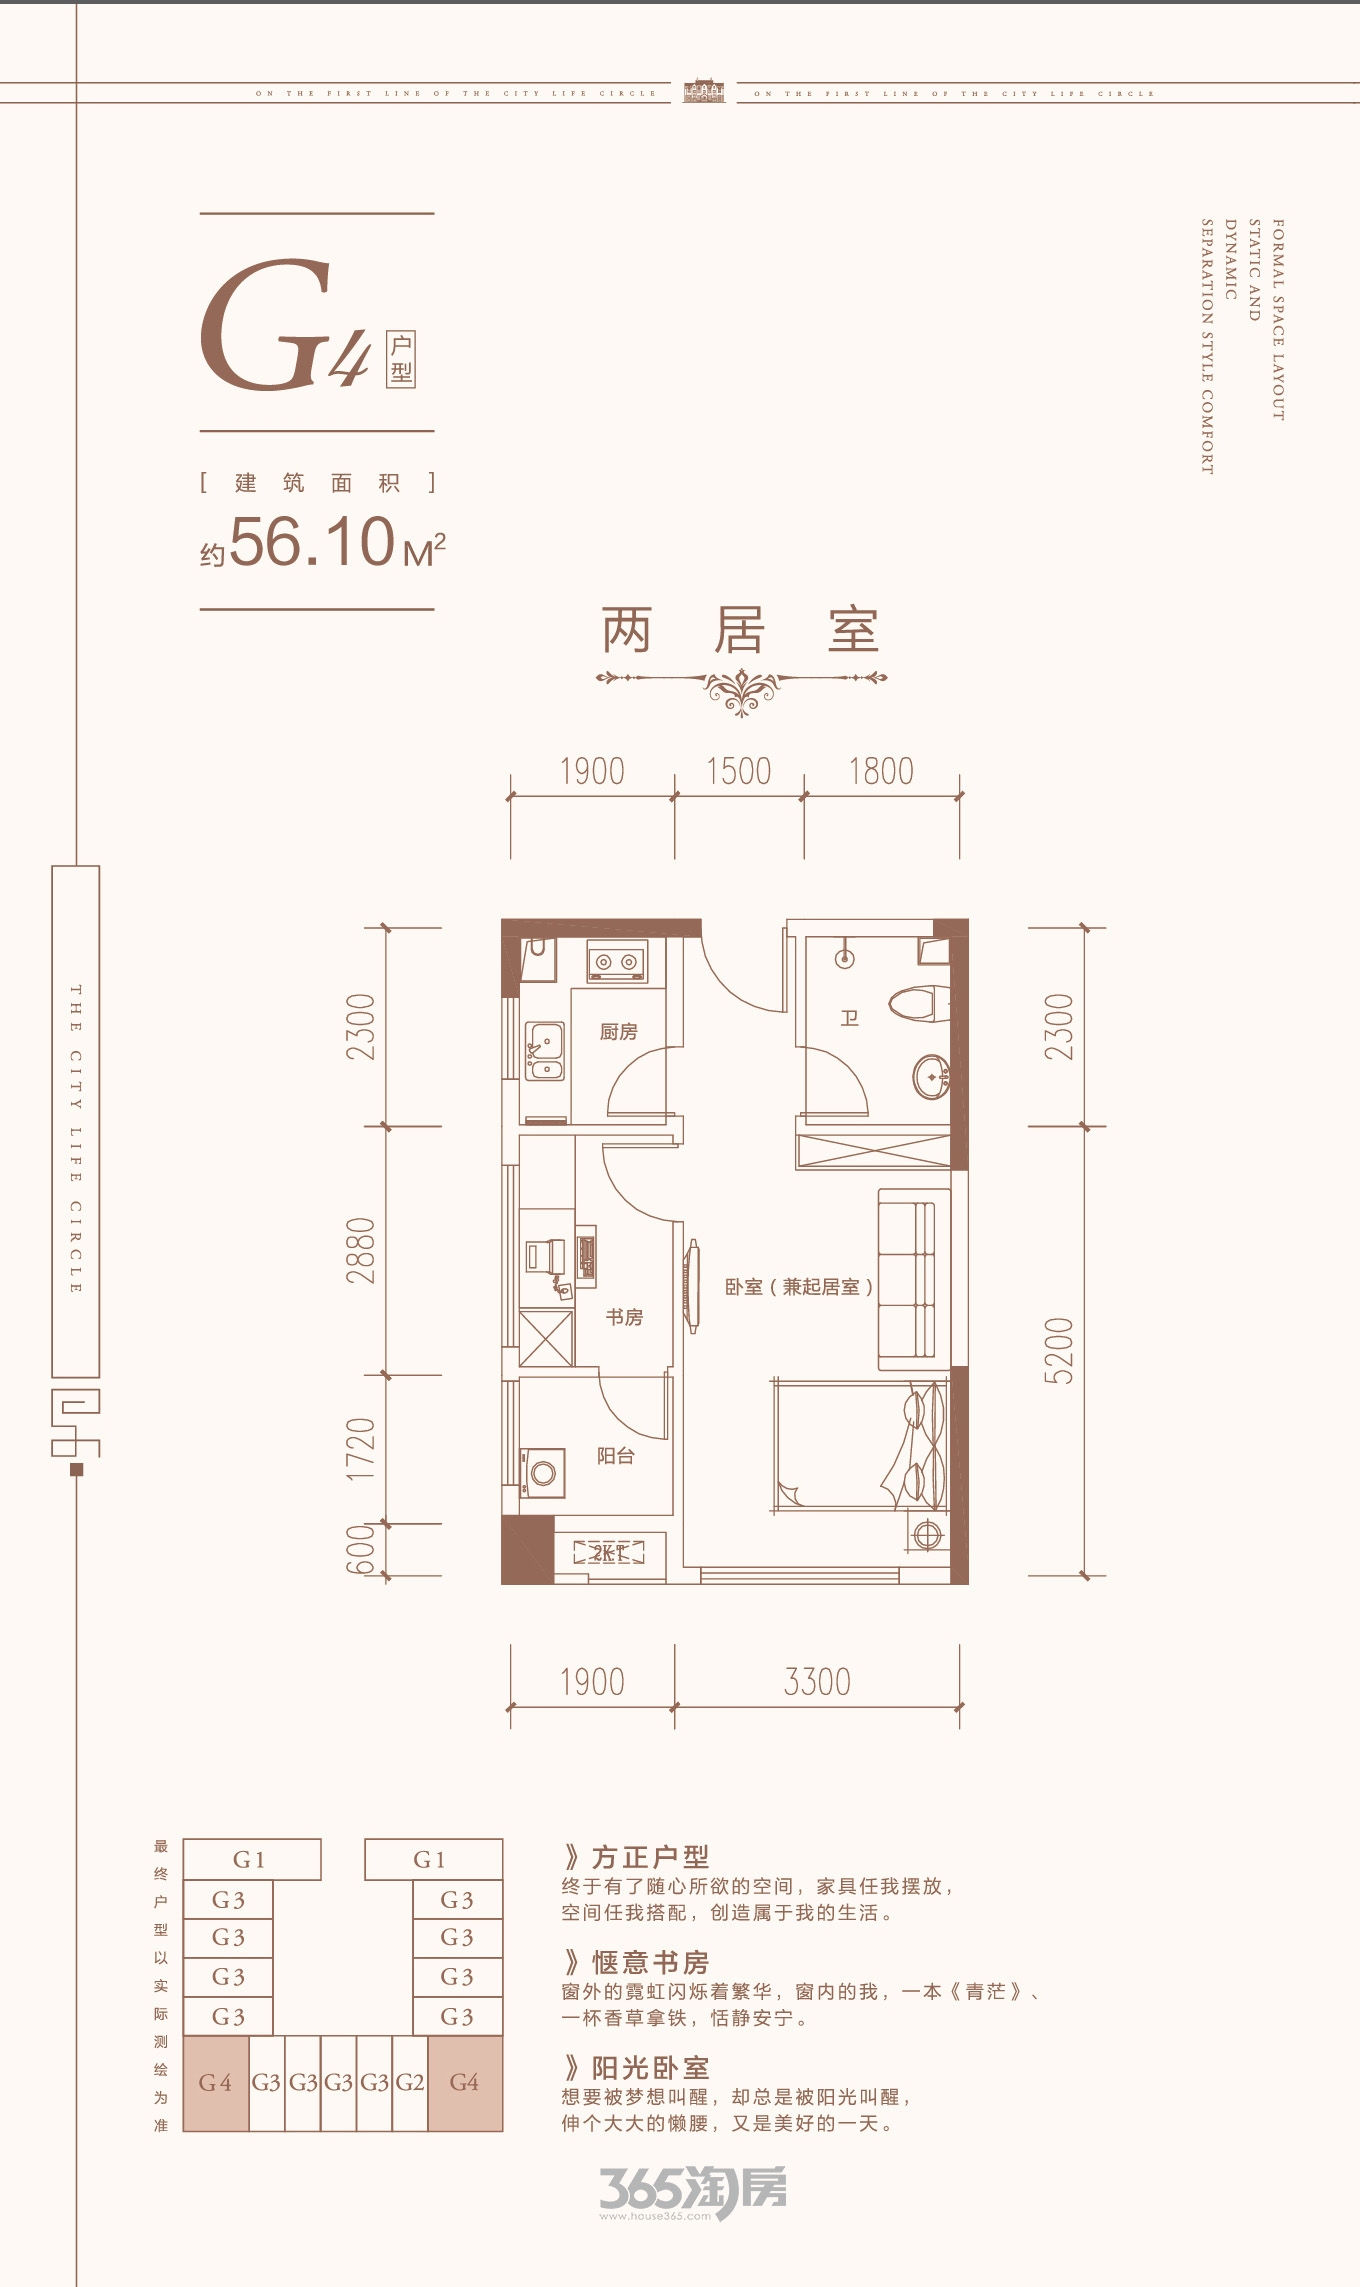 星海城G4公寓户型